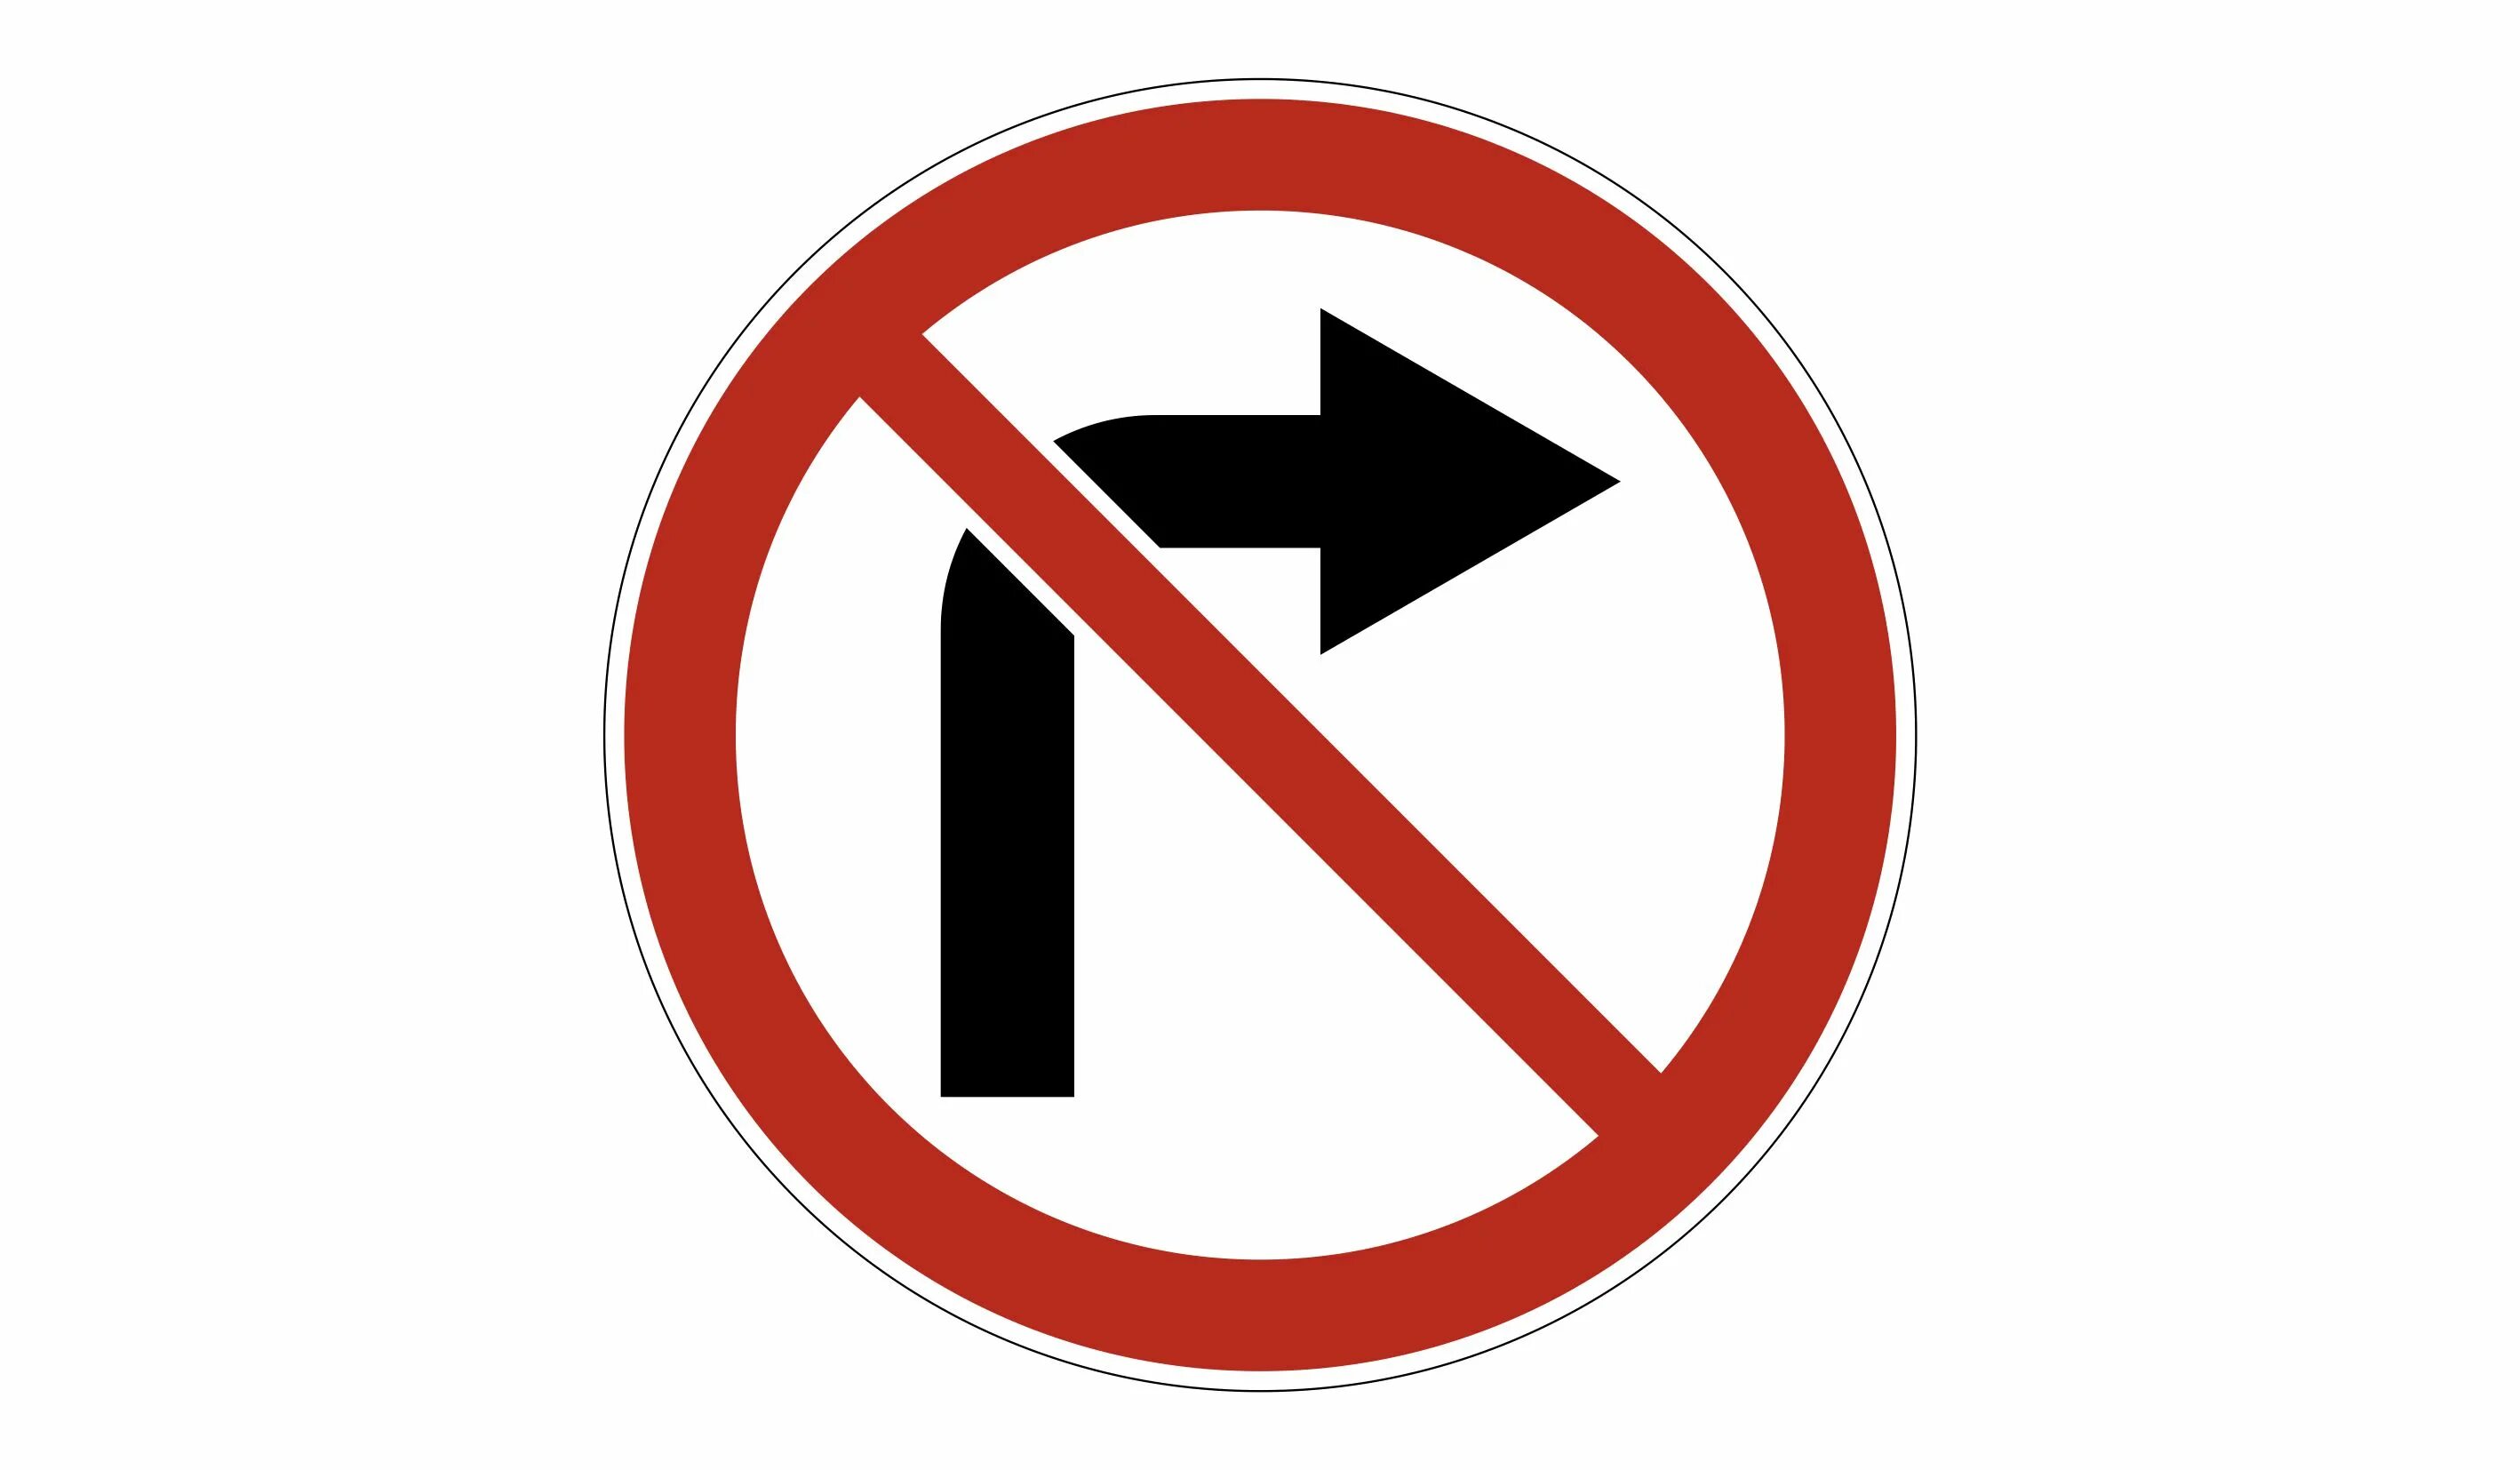 Пдд знак поворот налево запрещен. Поворот направо запрещен дорожный знак. 3.18.1 Поворот направо запрещен. Знак 3.18.1. Знак 3.18.2 поворот налево запрещен.